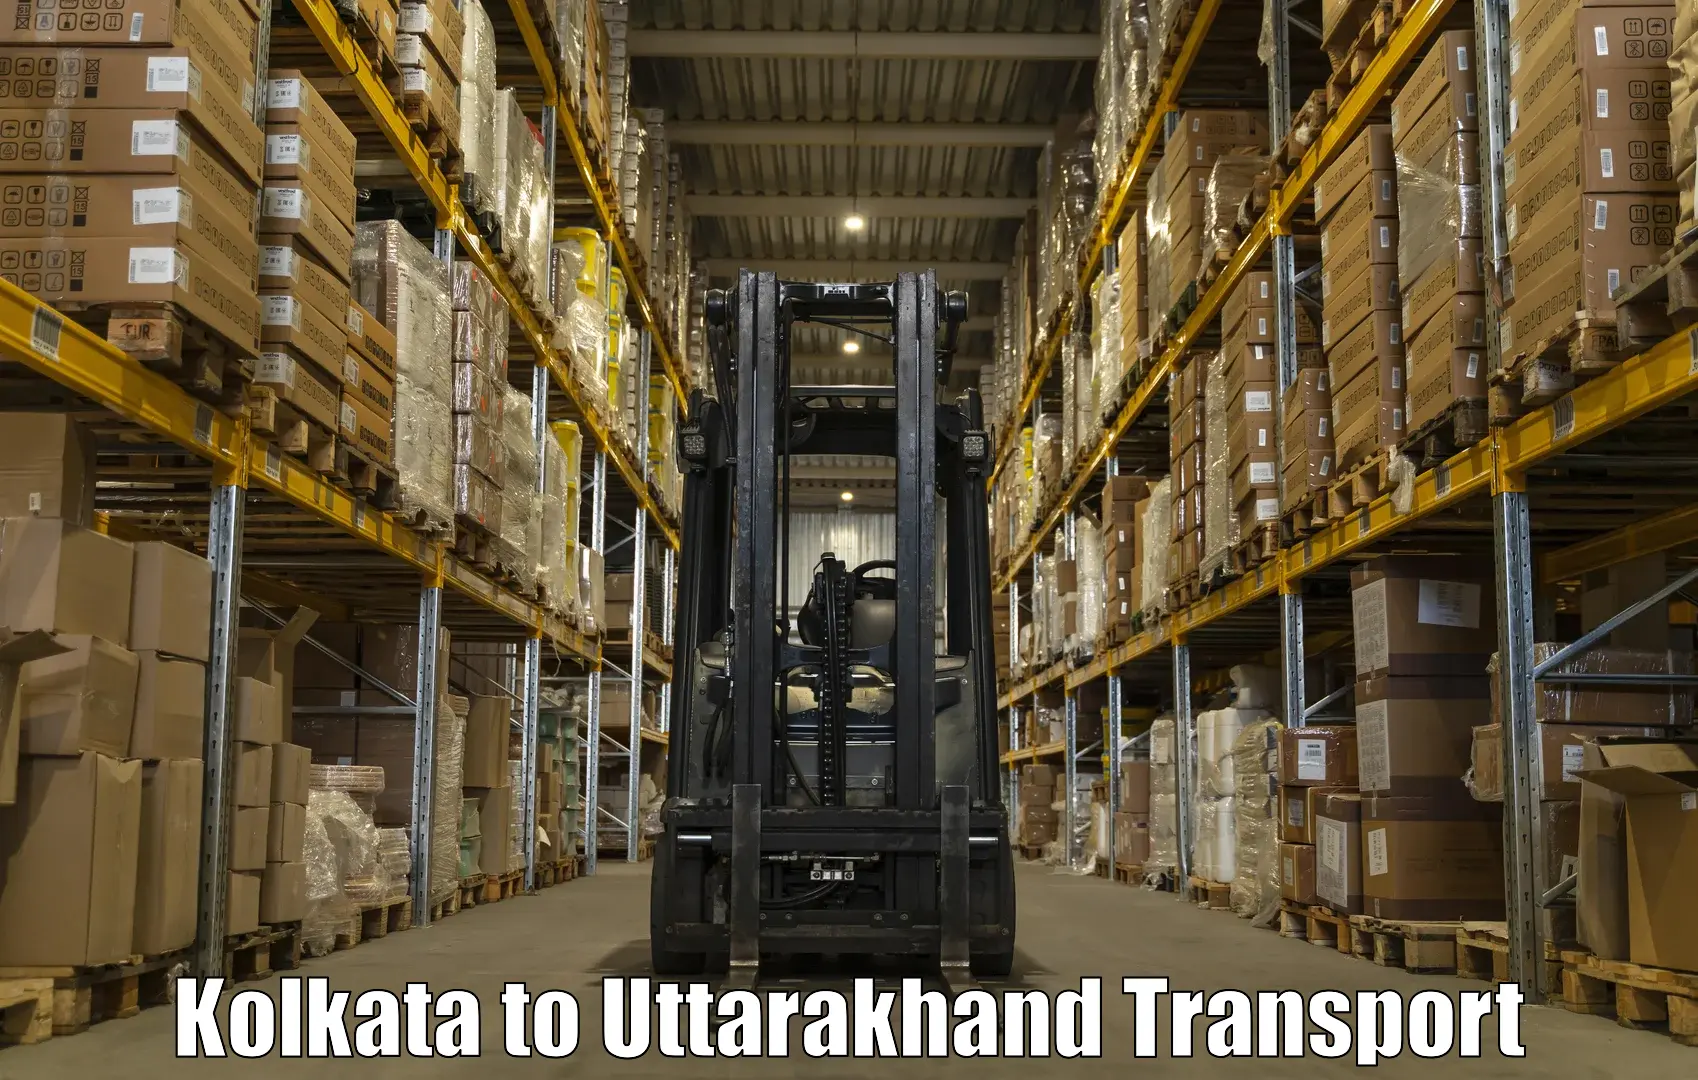 Bike shipping service Kolkata to Uttarakhand